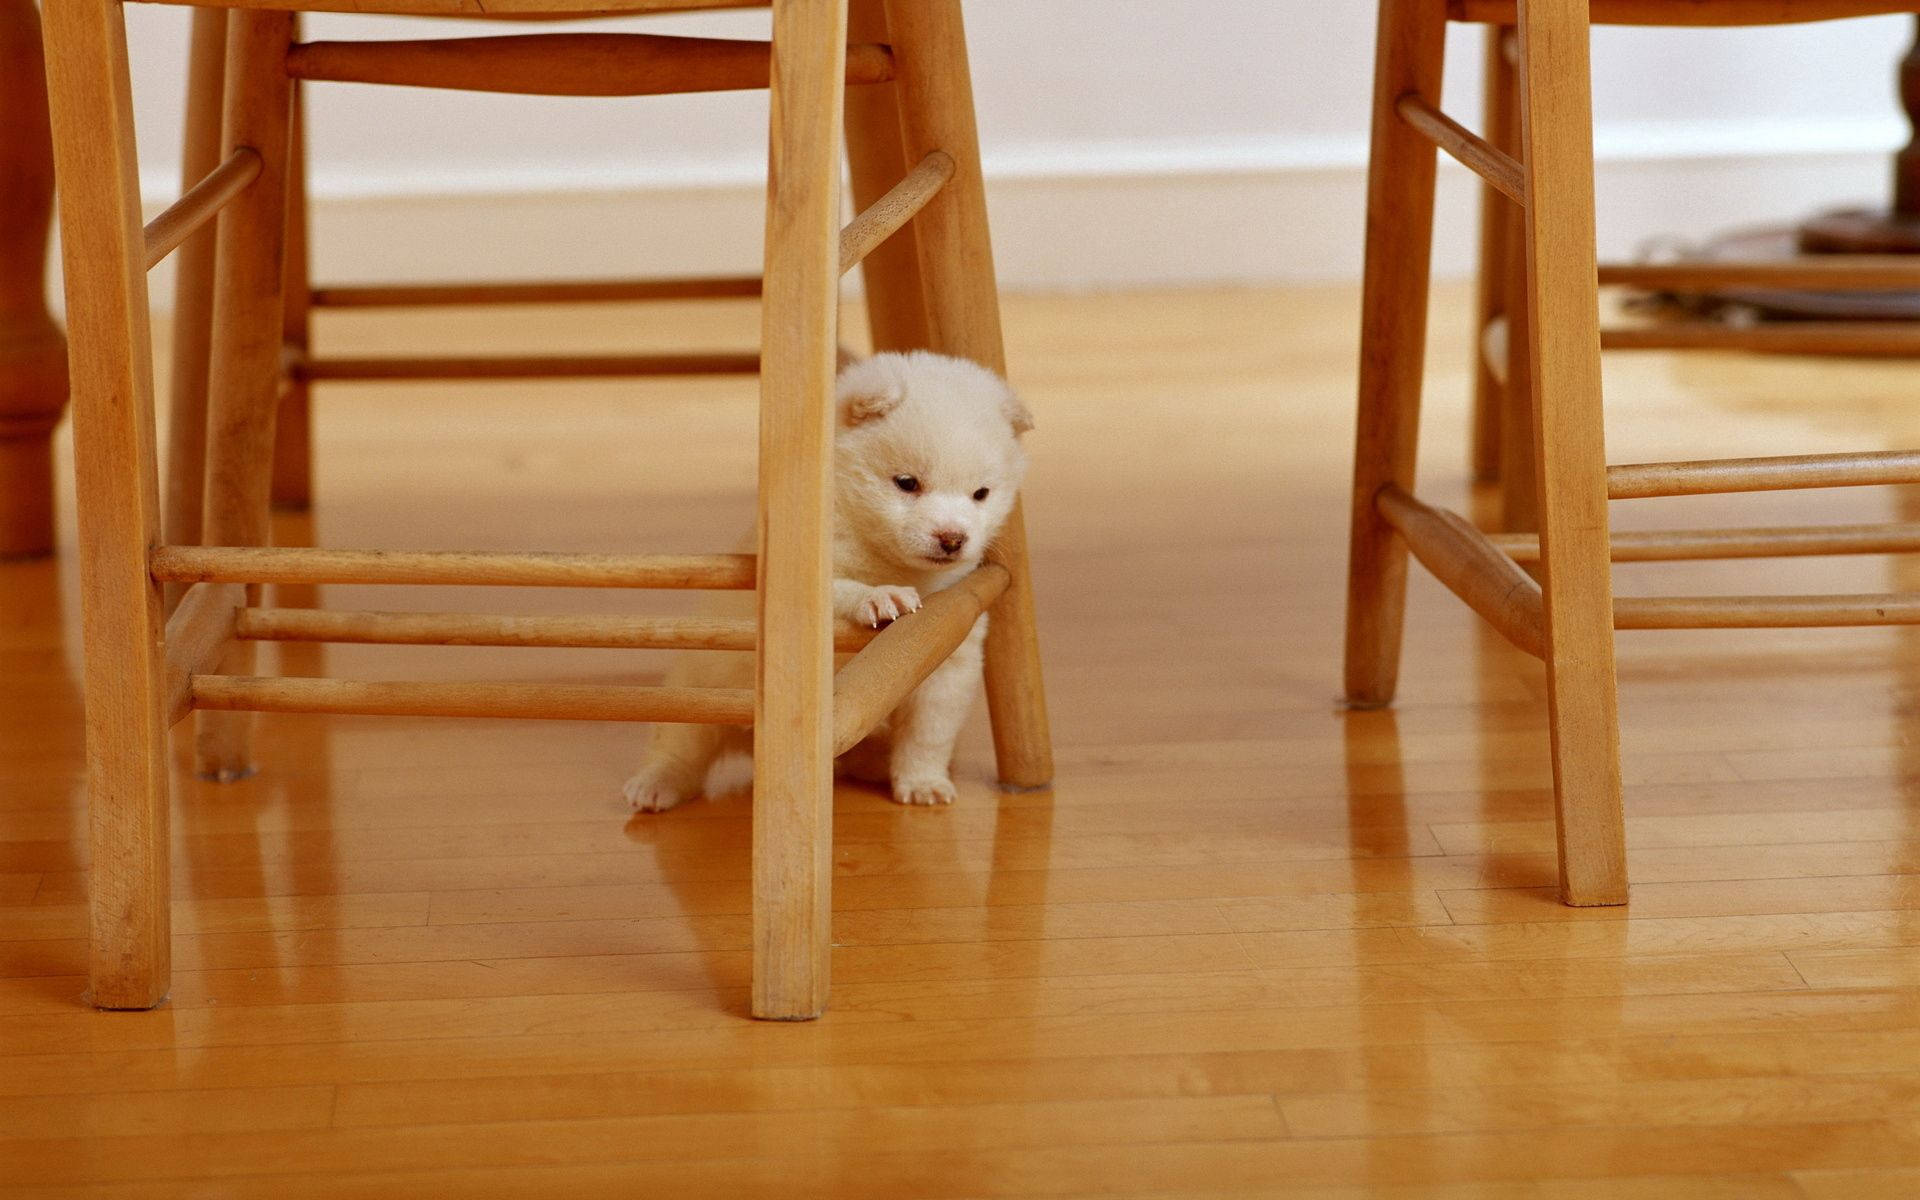 White Puppy Under The Chair Background